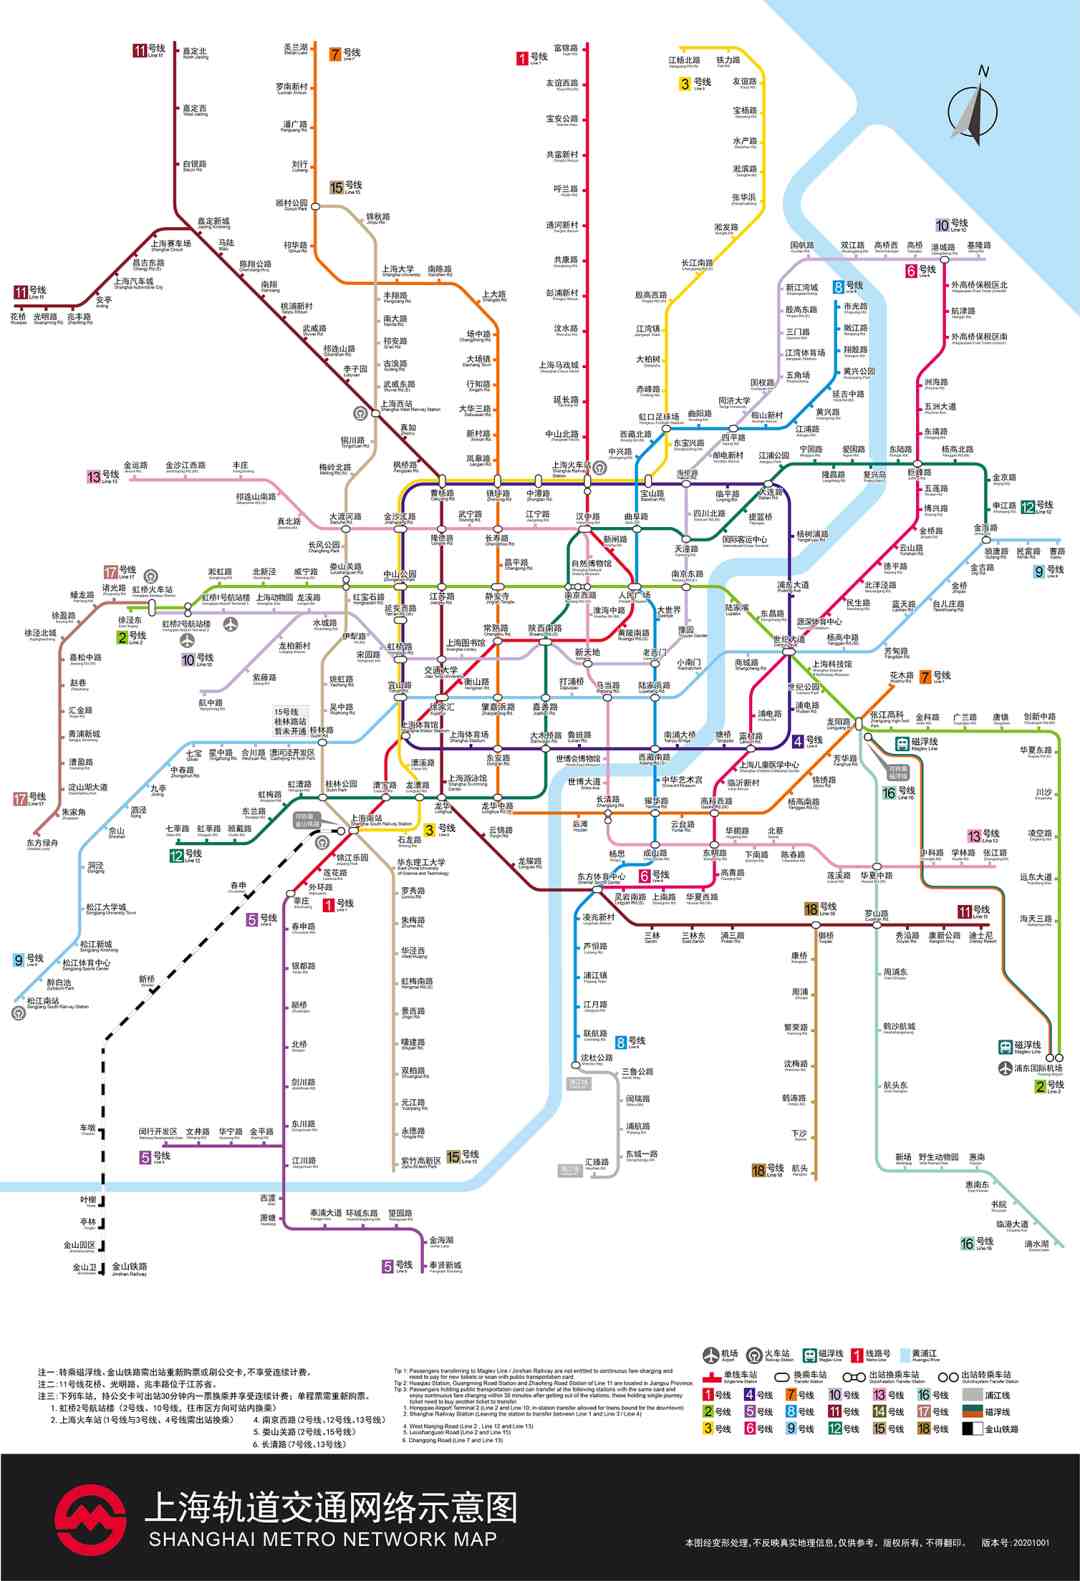 上海地铁线路图 最新(最新版上海地铁全网示意图在此)